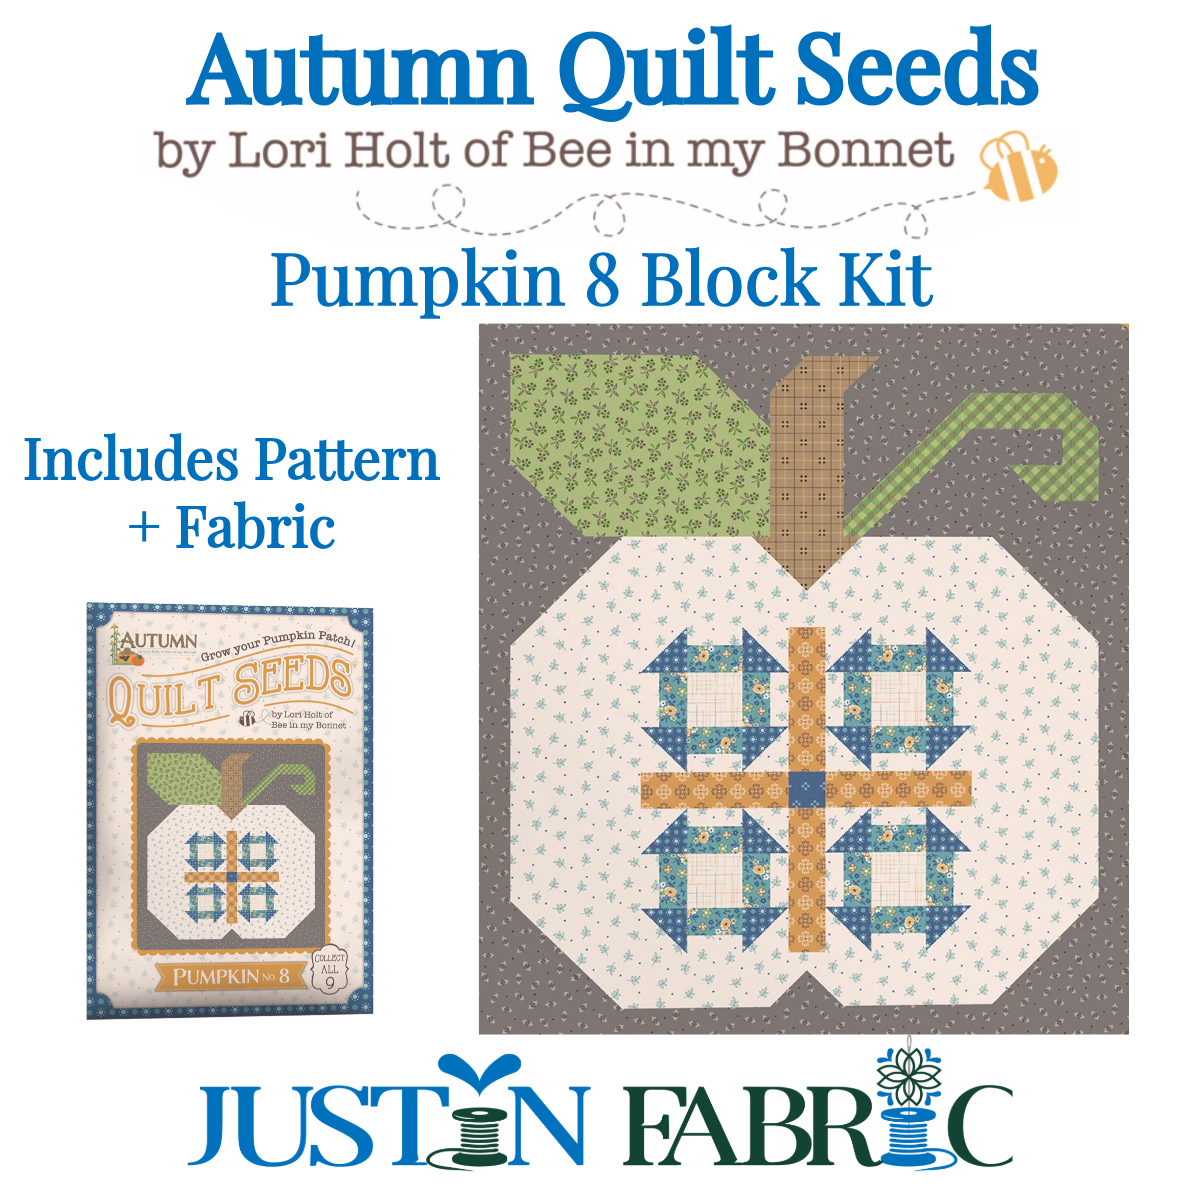 Autumn Quilt Seeds Pumpkin 8 Block Kit Featuring Autumn by Lori Holt